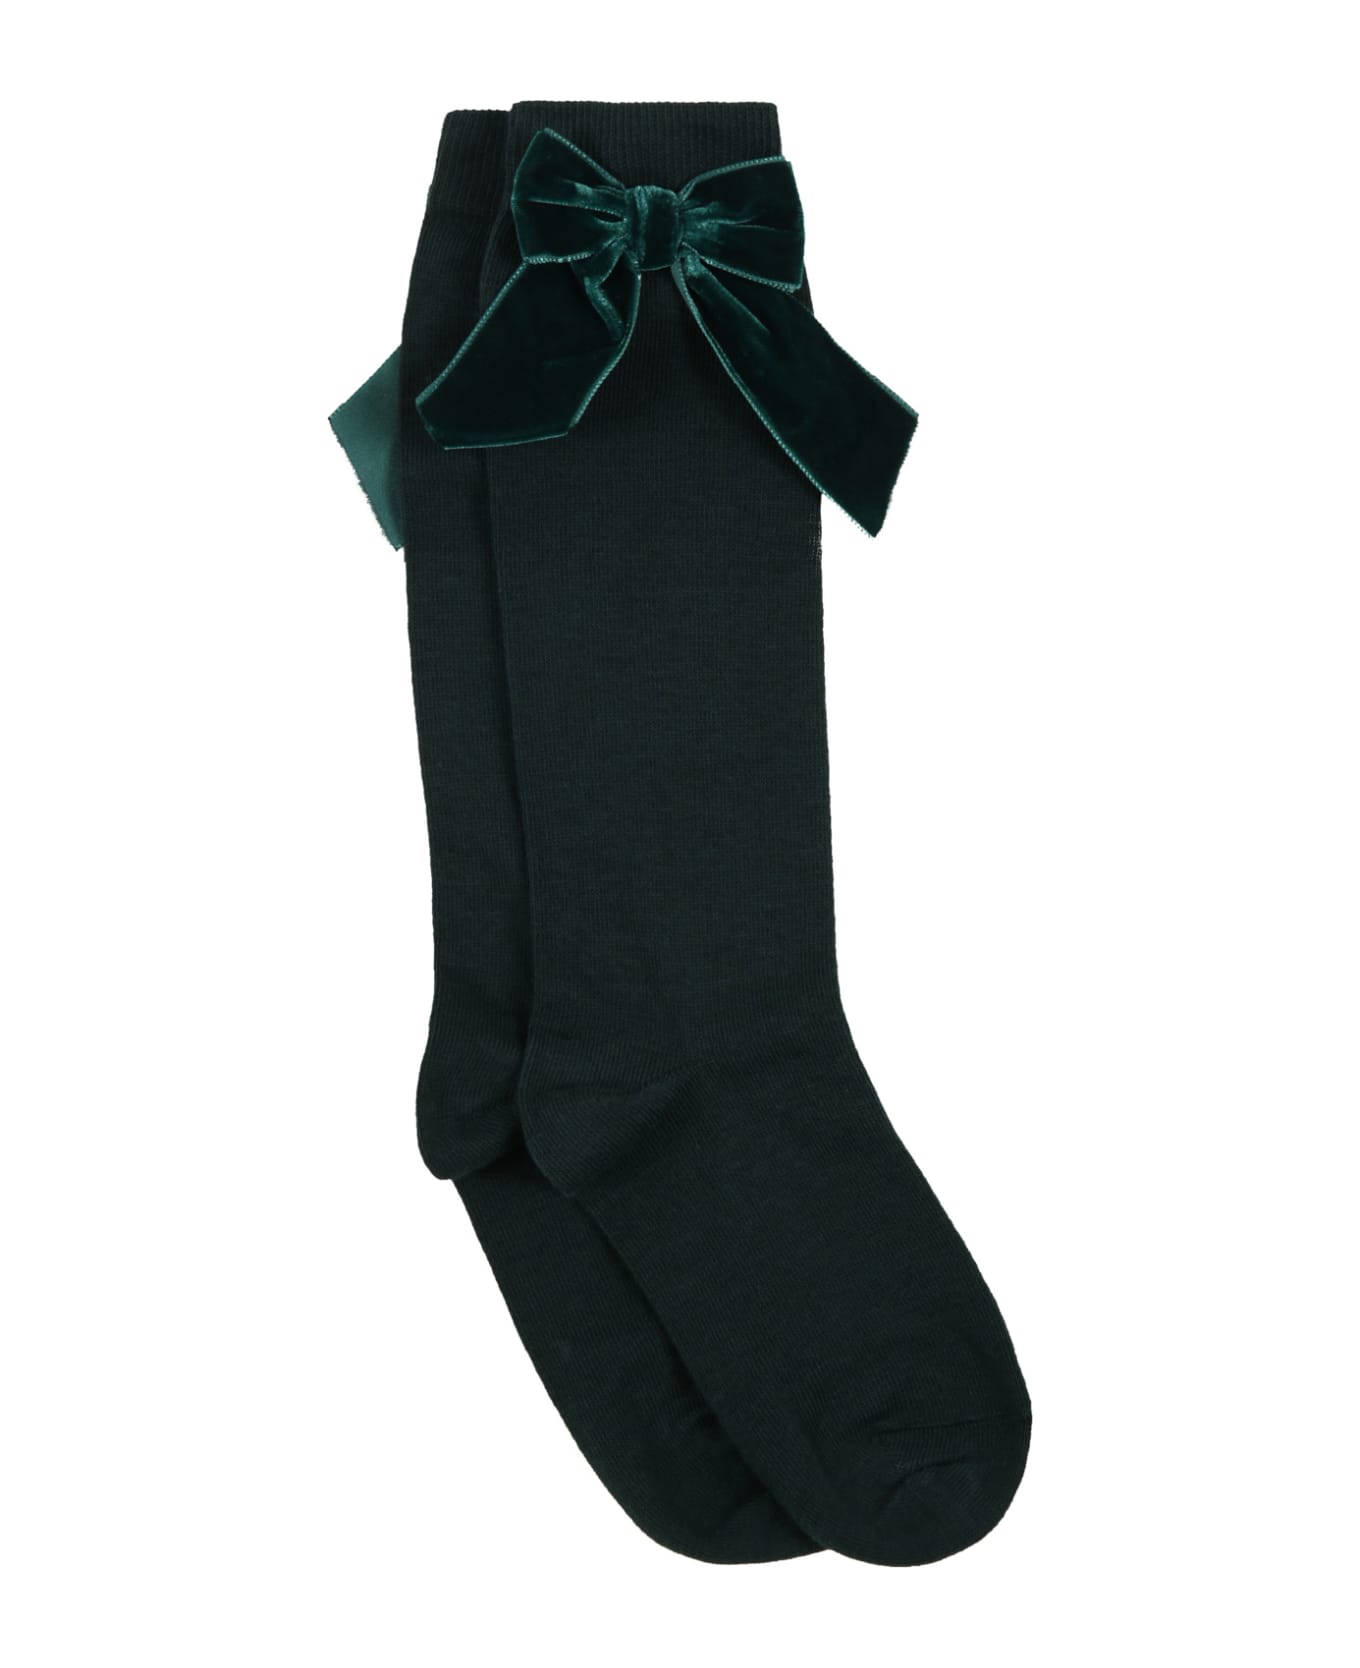 Story Loris Green Socks For Girl - Green